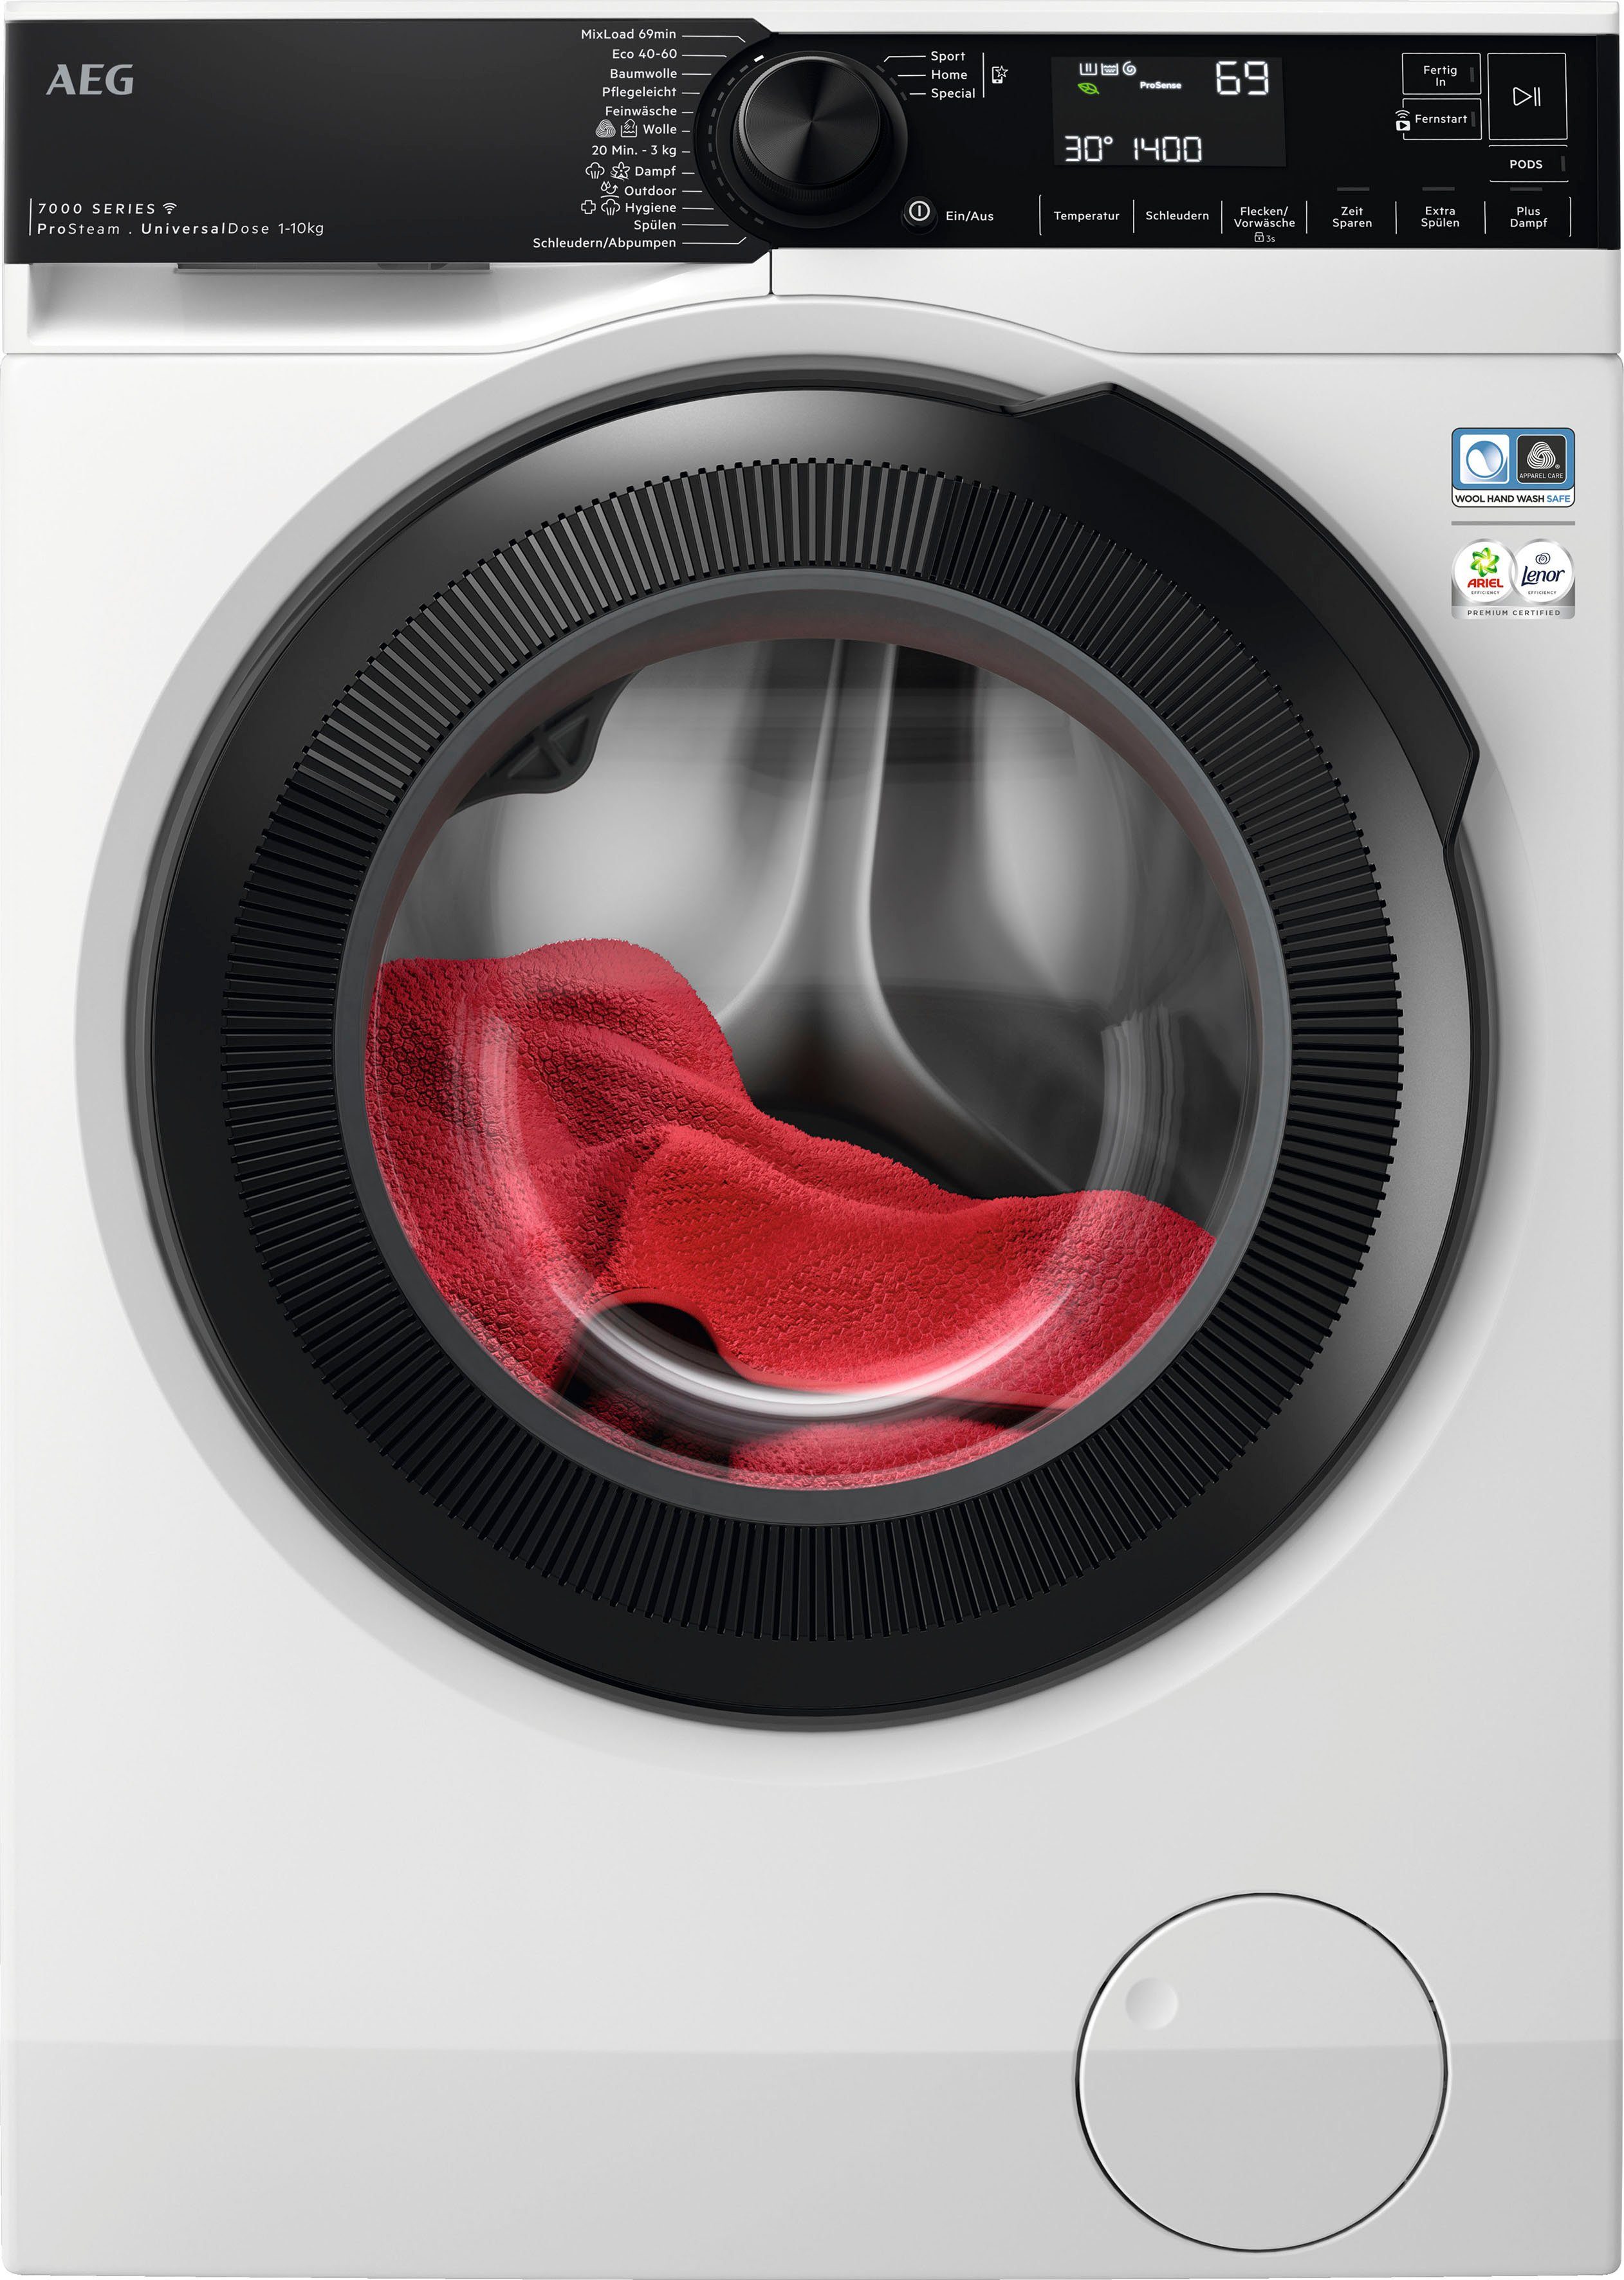 AEG Waschmaschine Serie 1600 Wasserverbrauch 10 Dampf-Programm weniger ProSteam für LR7EA610FL U/min, - kg, Wifi % 96 & 7000 914501652